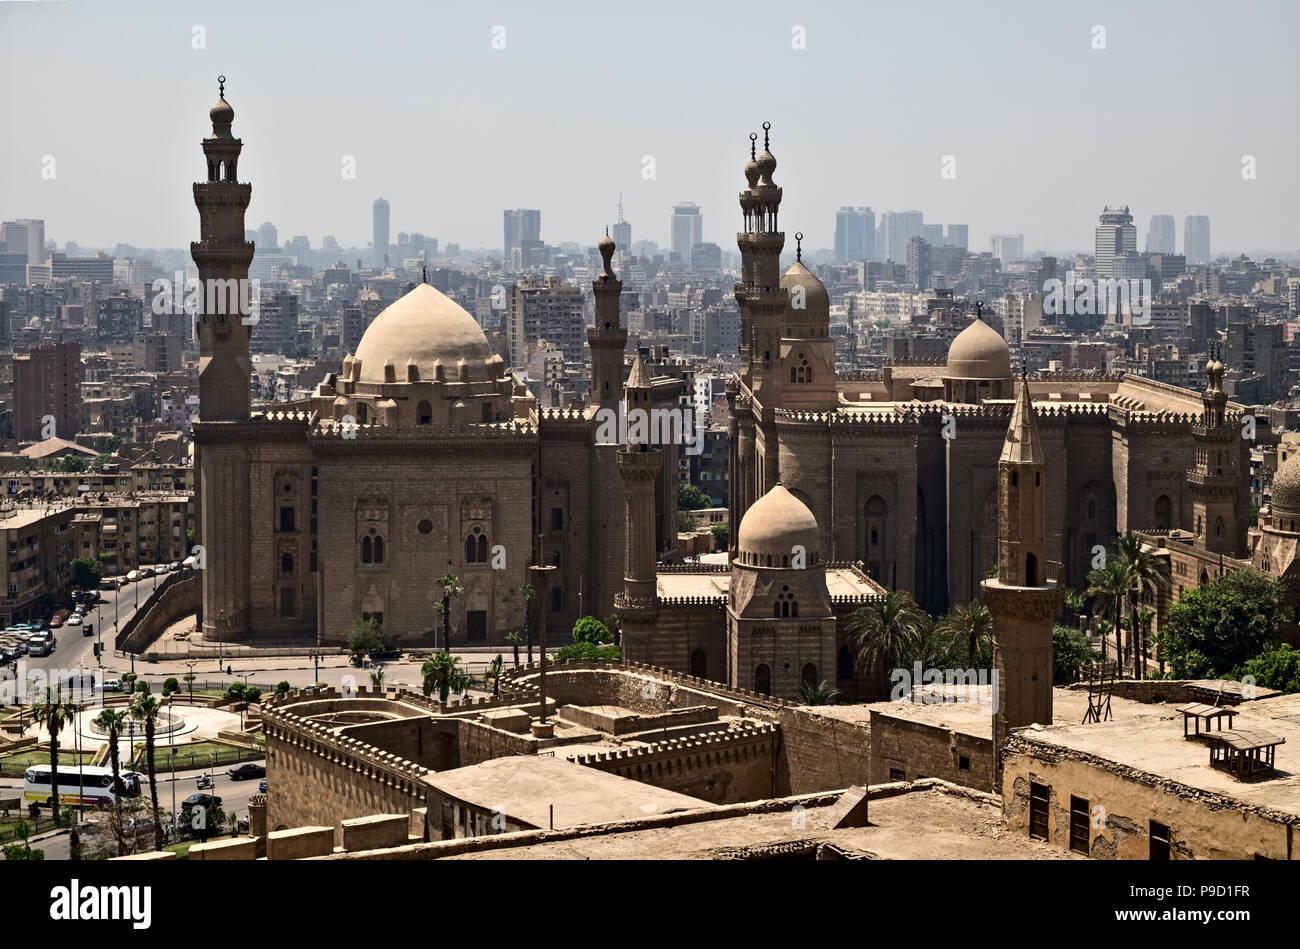 Mosque-Madrassa of Sultan Hassan and Al-Rifai Mosque in Cairo, Egypt Stock Photo